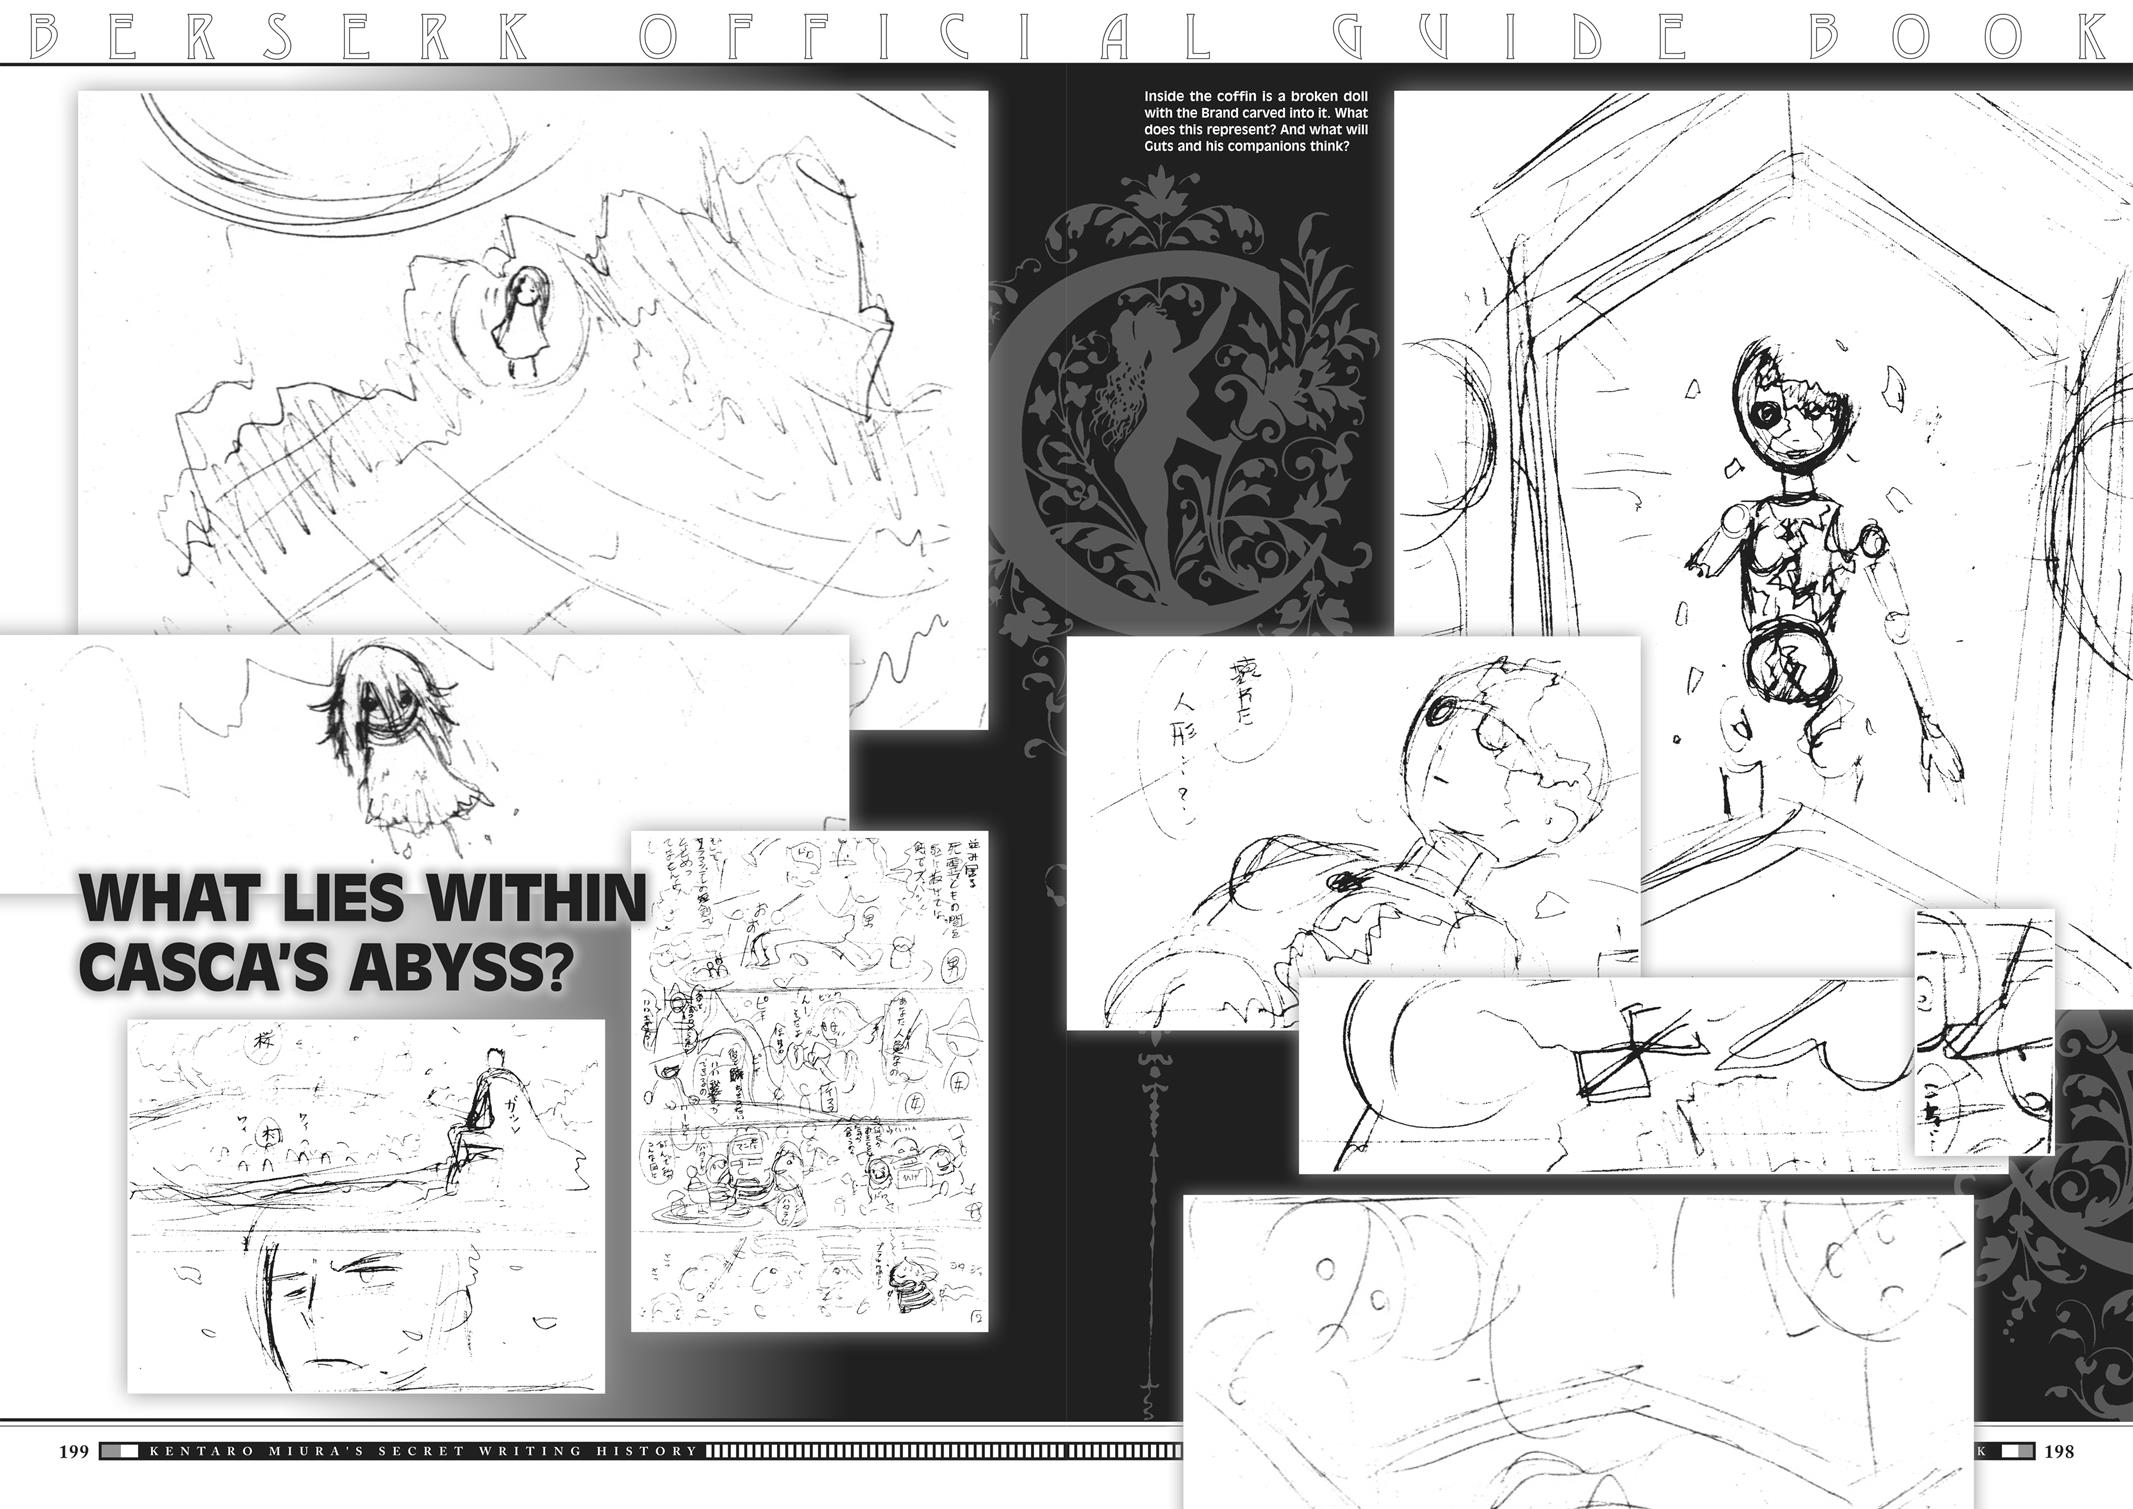 Berserk Manga Chapter 350.5 image 192